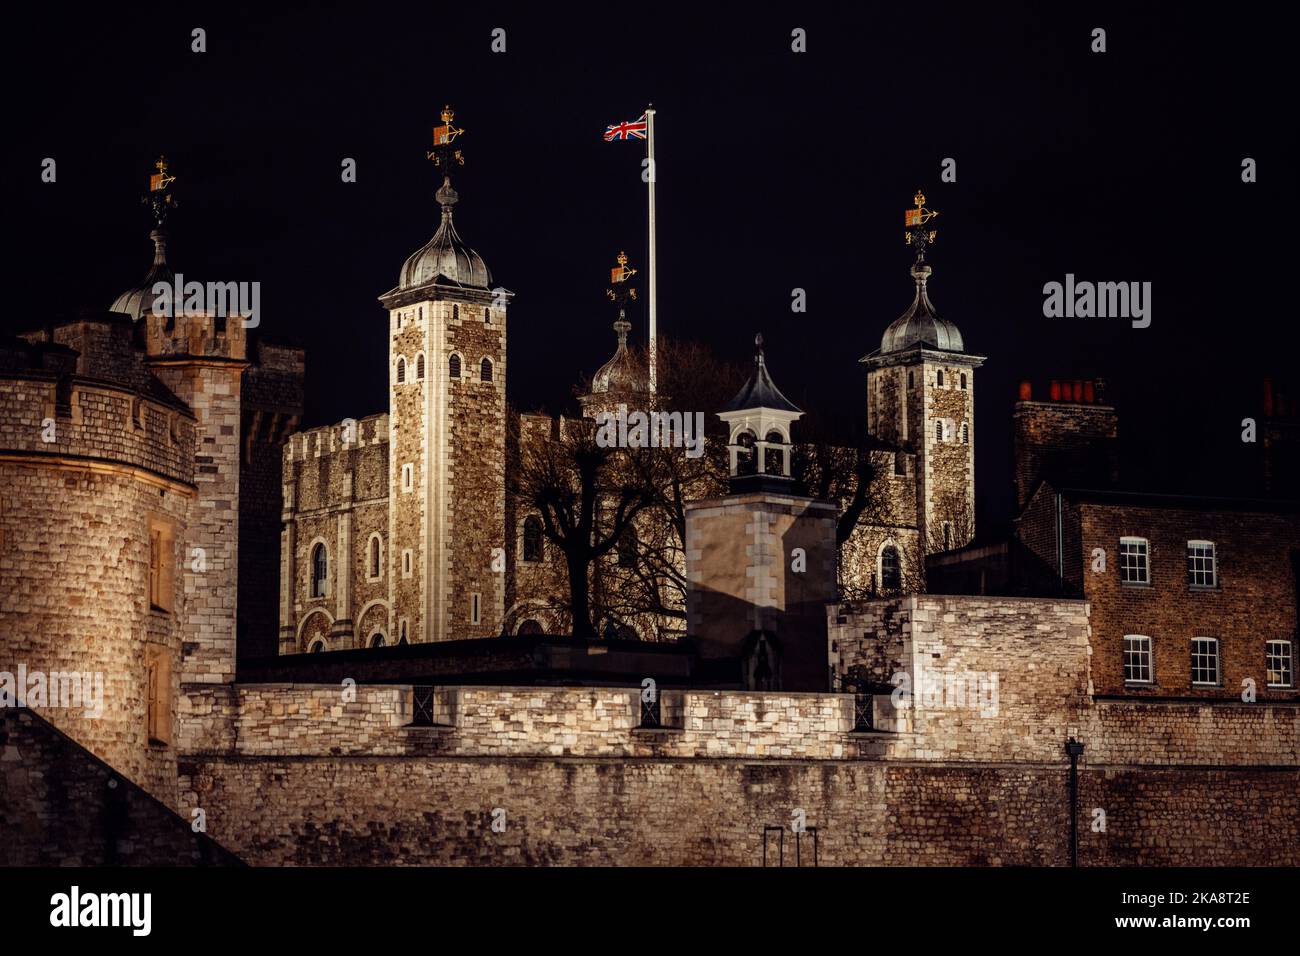 Der Tower of London, offiziell der Königspalast Ihrer Majestät, ist eine historische Burg am Nordufer der Themse im Zentrum Londons Stockfoto